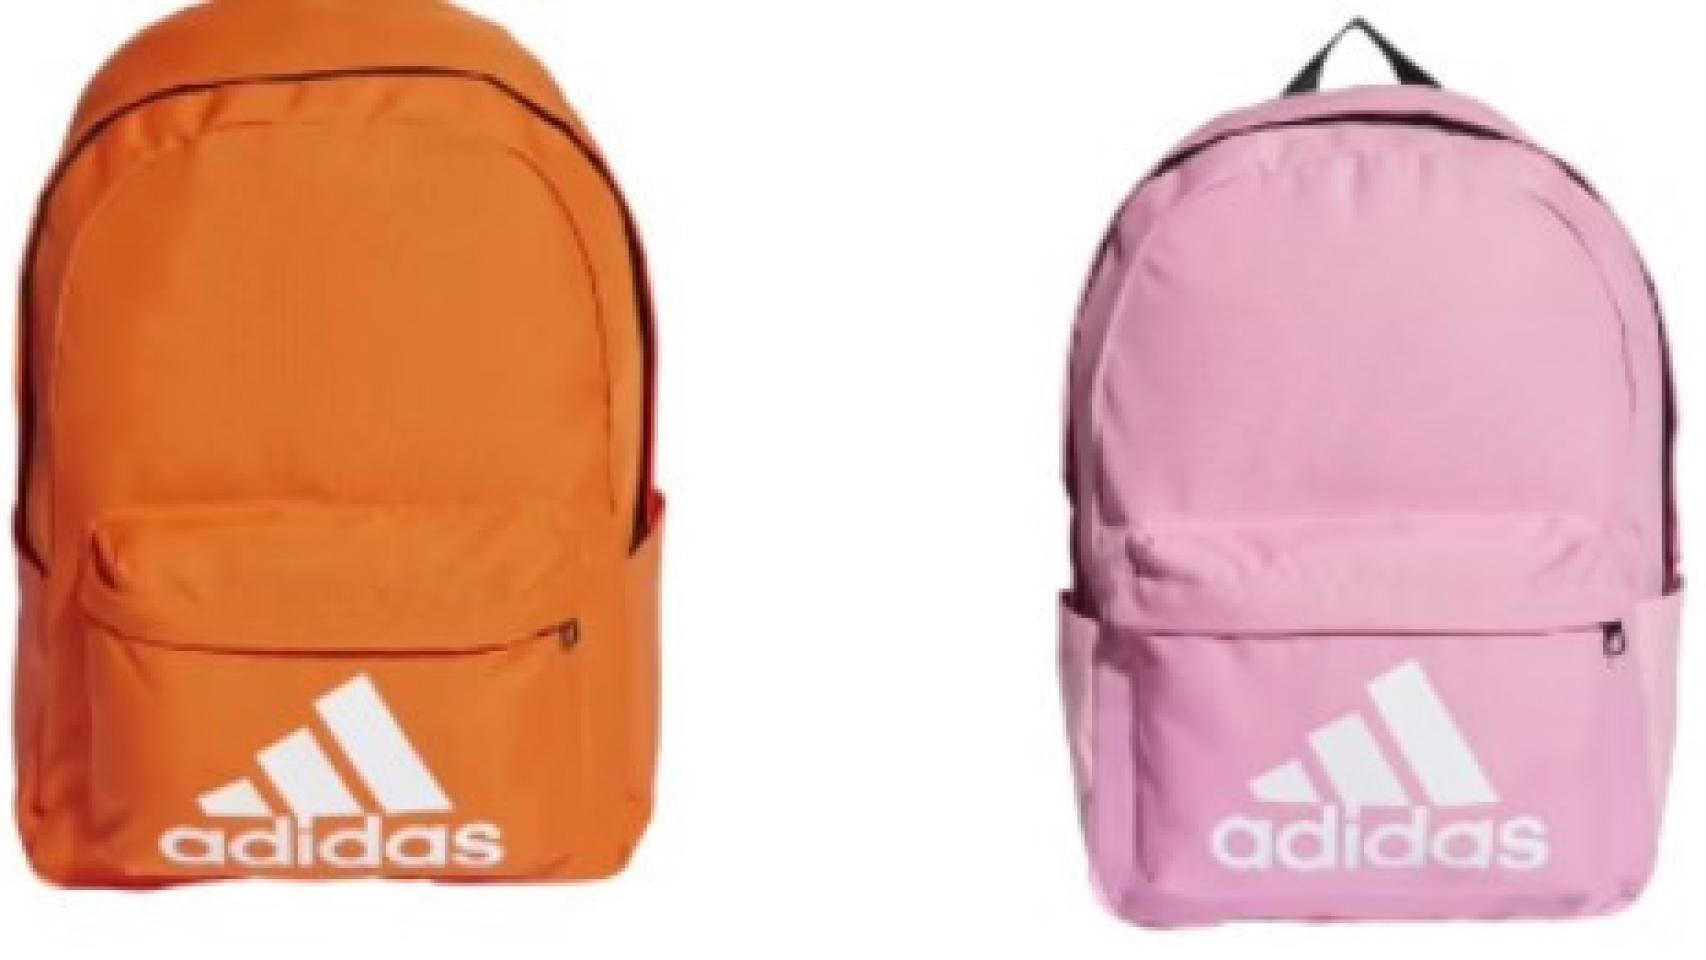 El inesperado de Decathlon: mochilas Adidas cuatro modelos por 19,99 euros